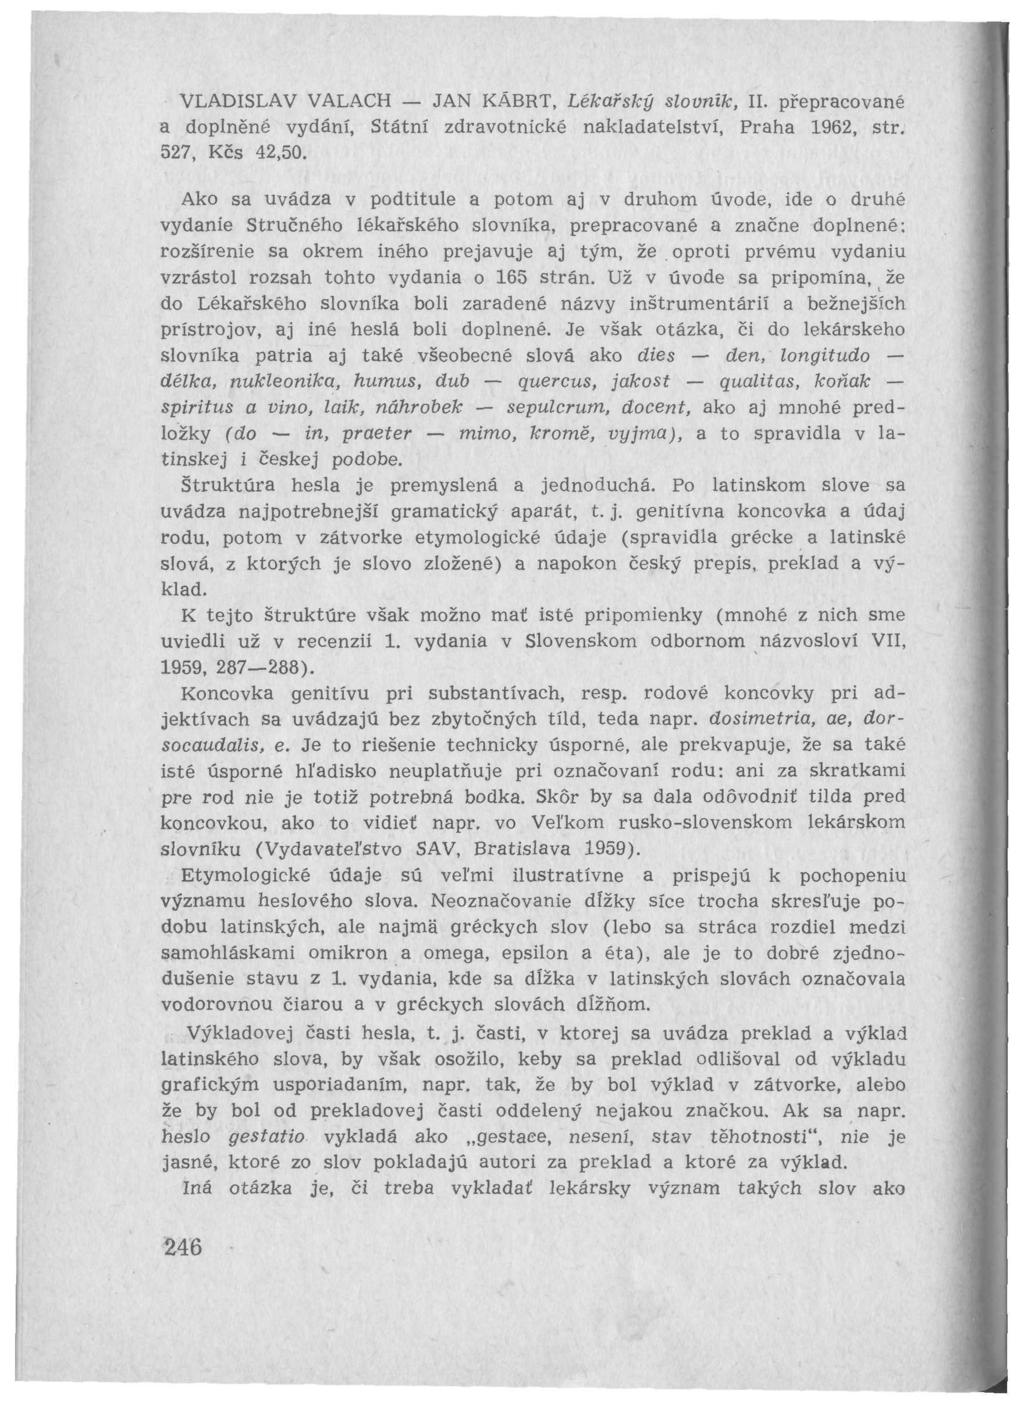 VLADISLAV VALACH JAN KÄBRT, Lékařský slovník, II. přepracované a doplněné vydání, Státní zdravotnické nakladatelství, Praha 1962, str. 527, Kčs 42,50.